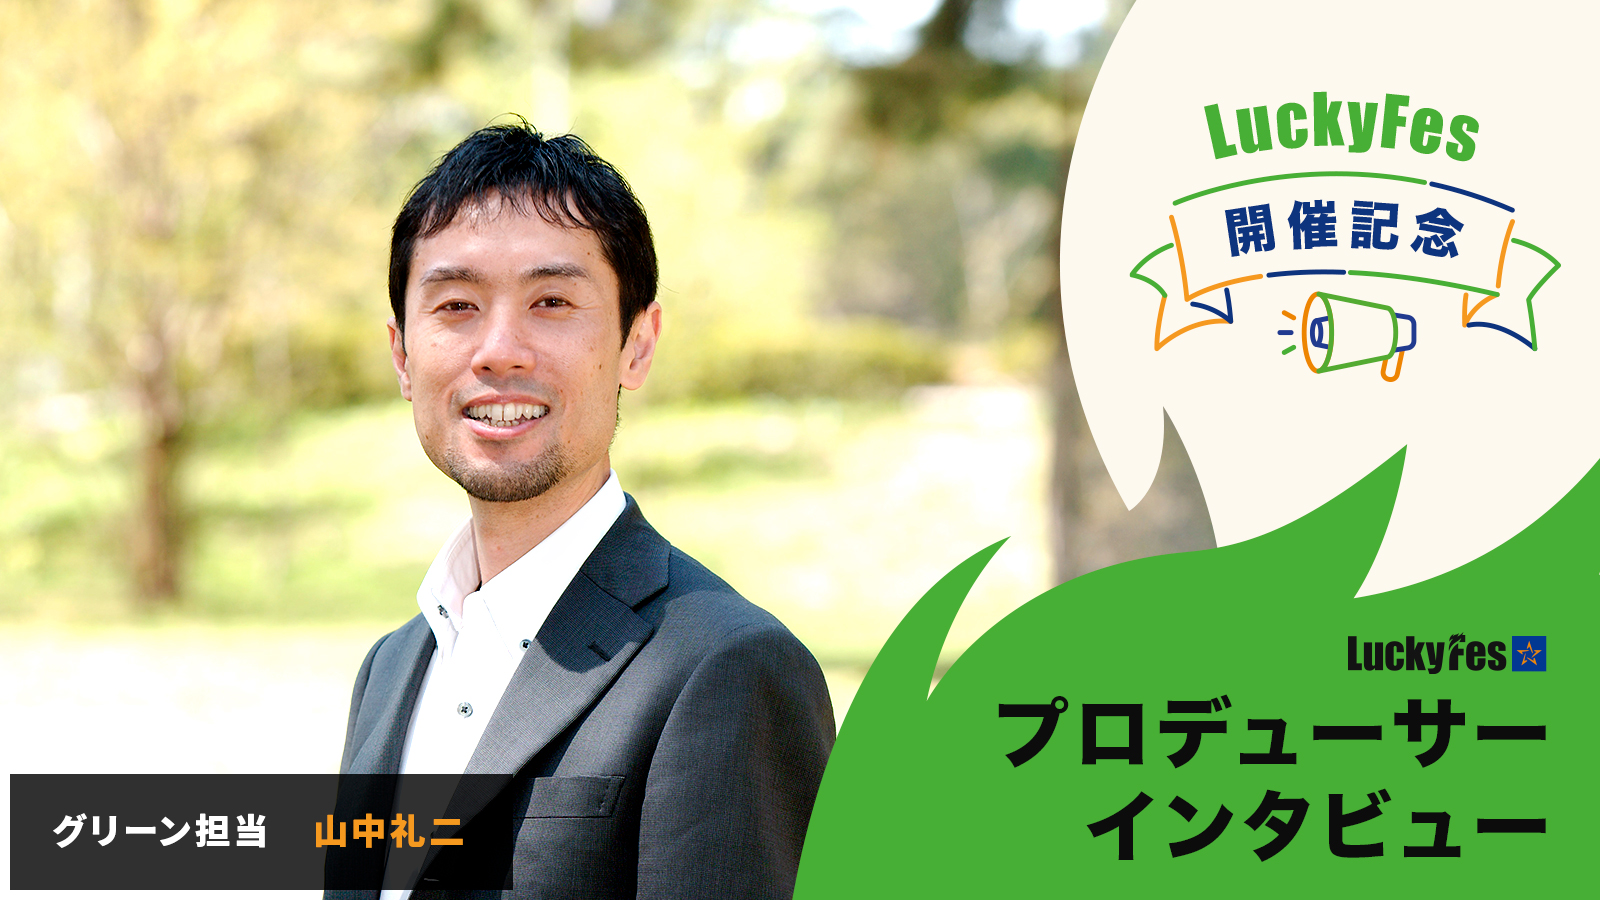 「日本一グリーンなフェス」を参加者と共に作り上げる――変革に挑むプロデューサーたちに聞く、LuckyFesの舞台裏